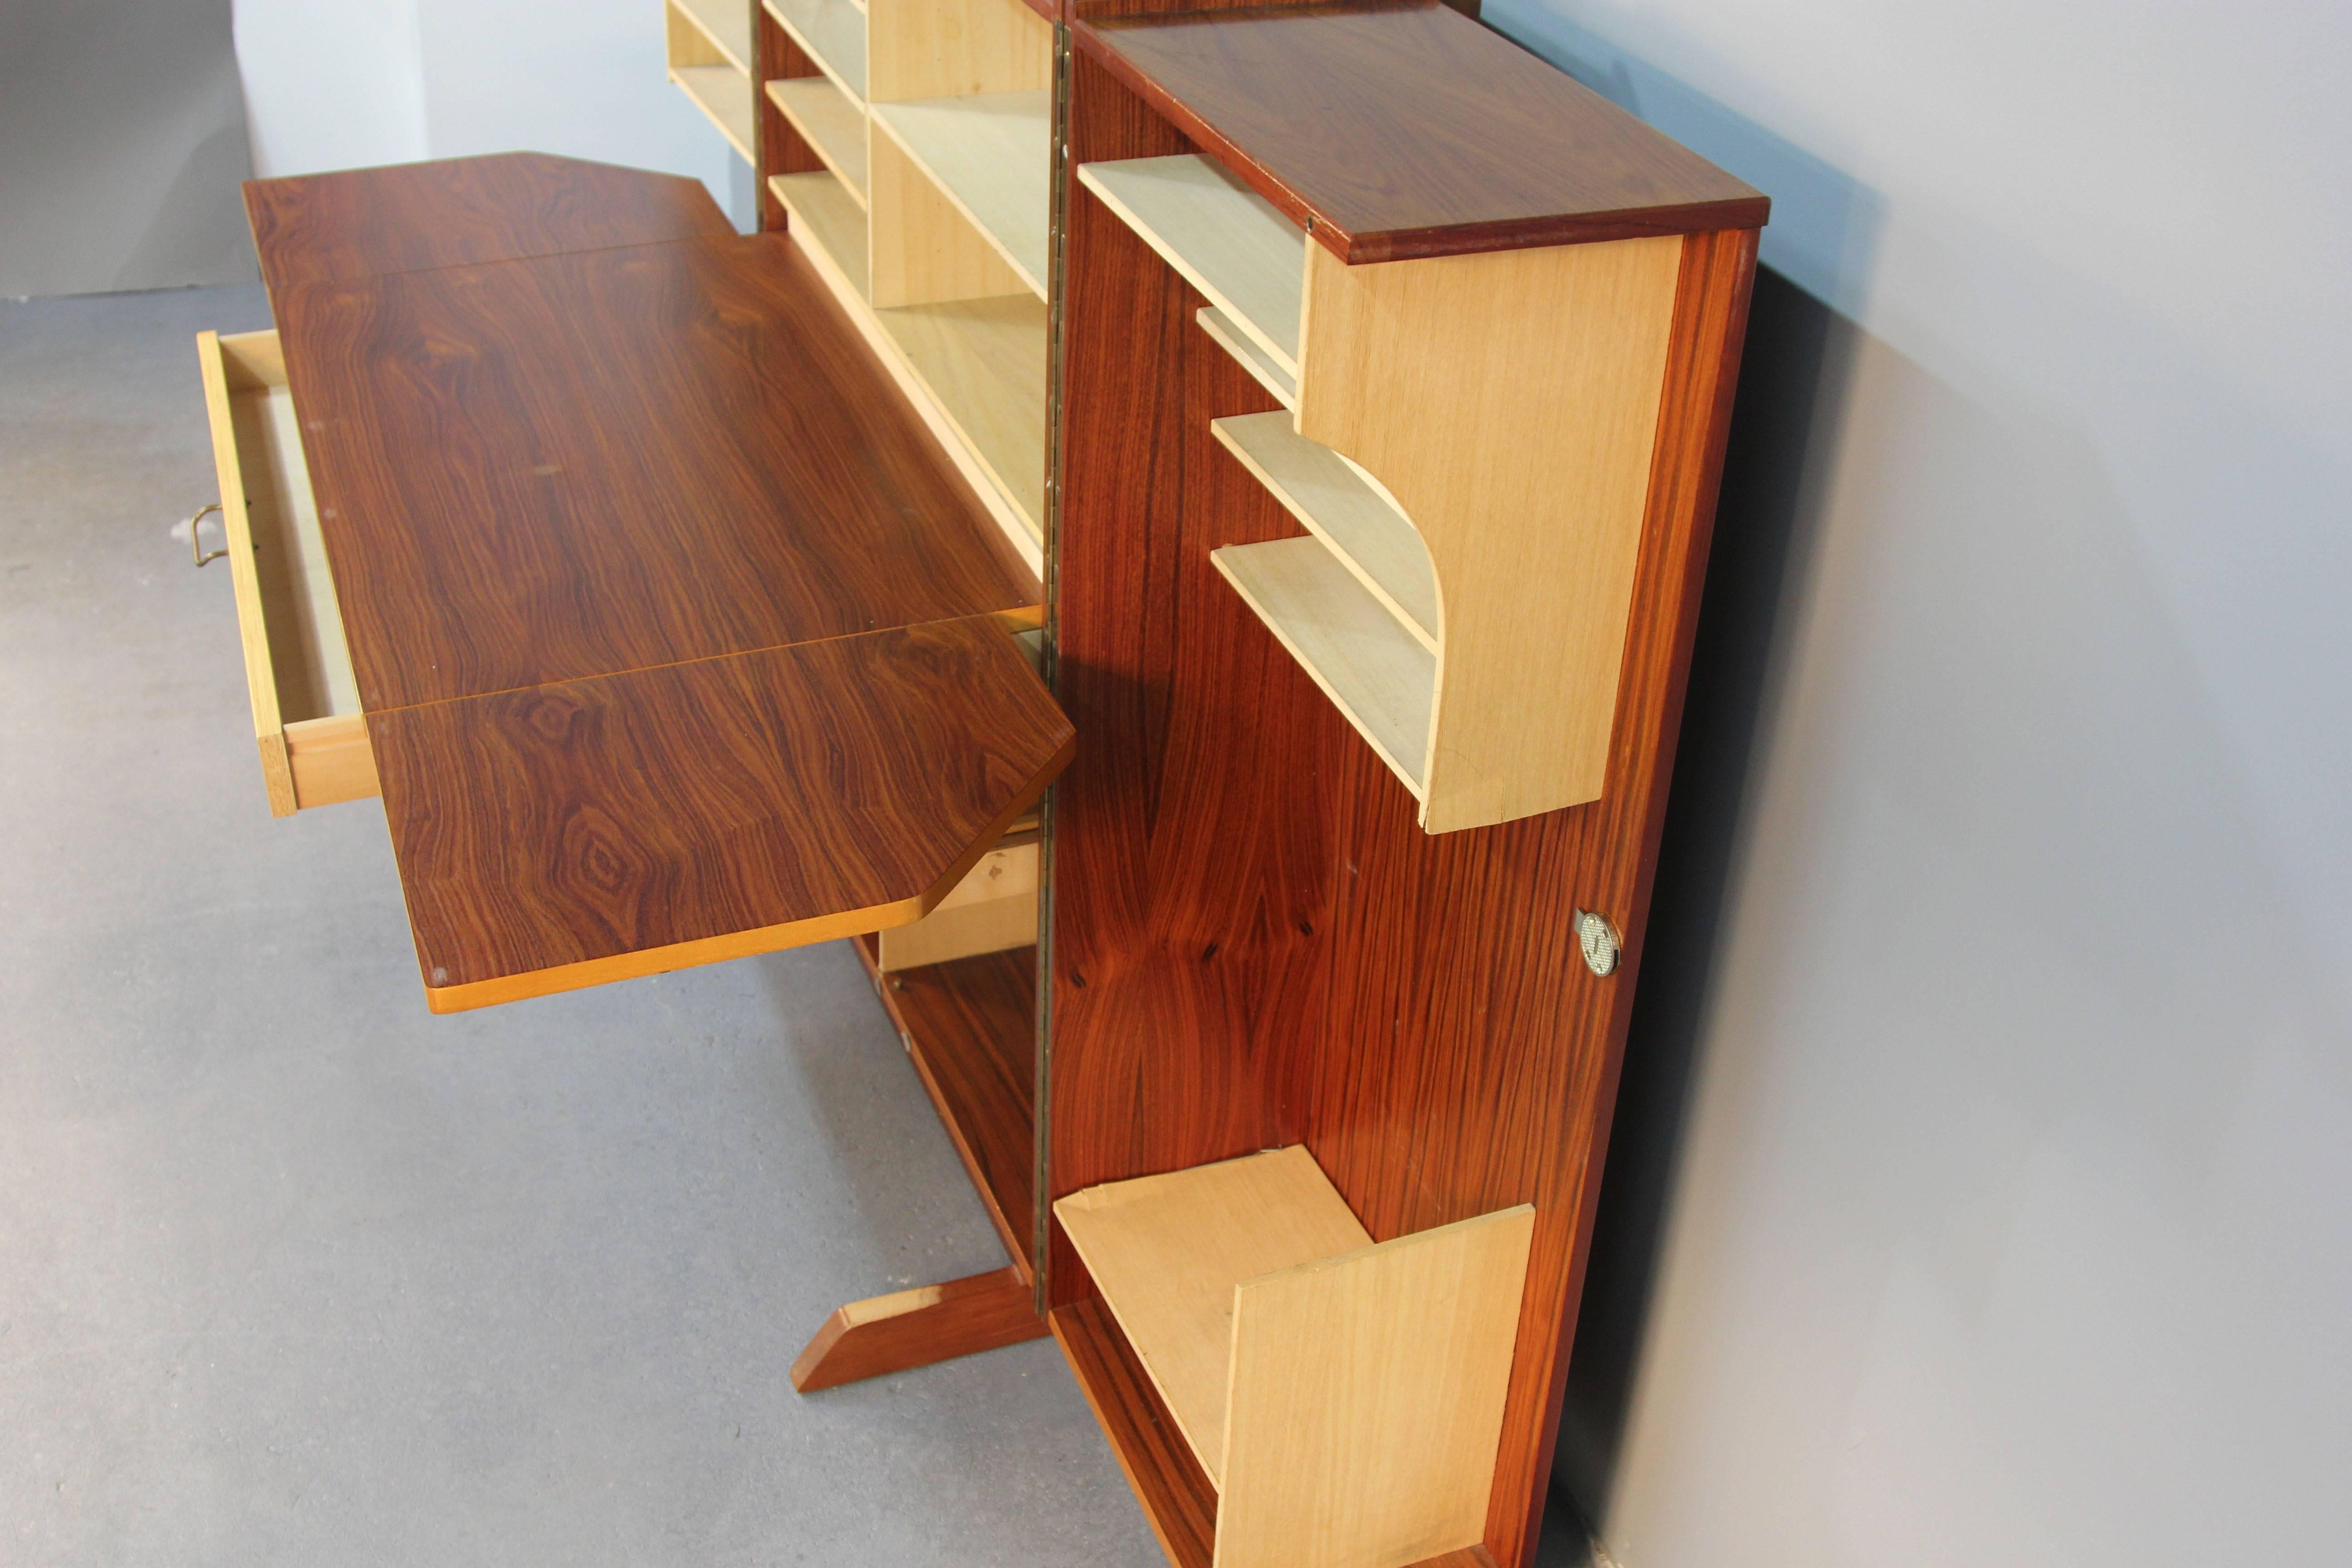 wooten desk for sale